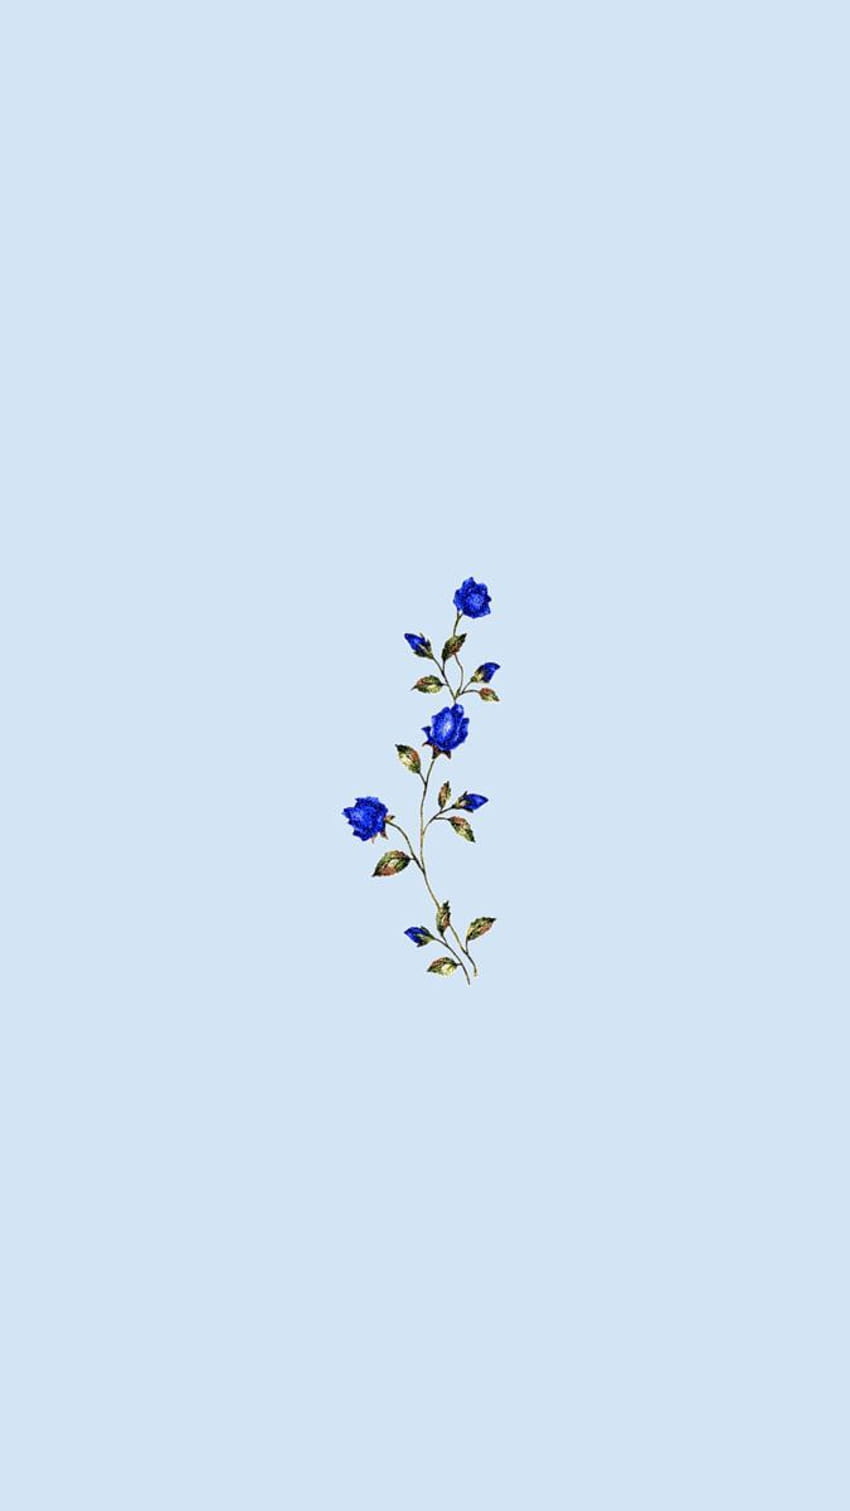  Blumen Blau Hintergrundbild 850x1511. Einfache Blaue Blume, Blaue ästhetische Blumen HD Handy Hintergrundbild